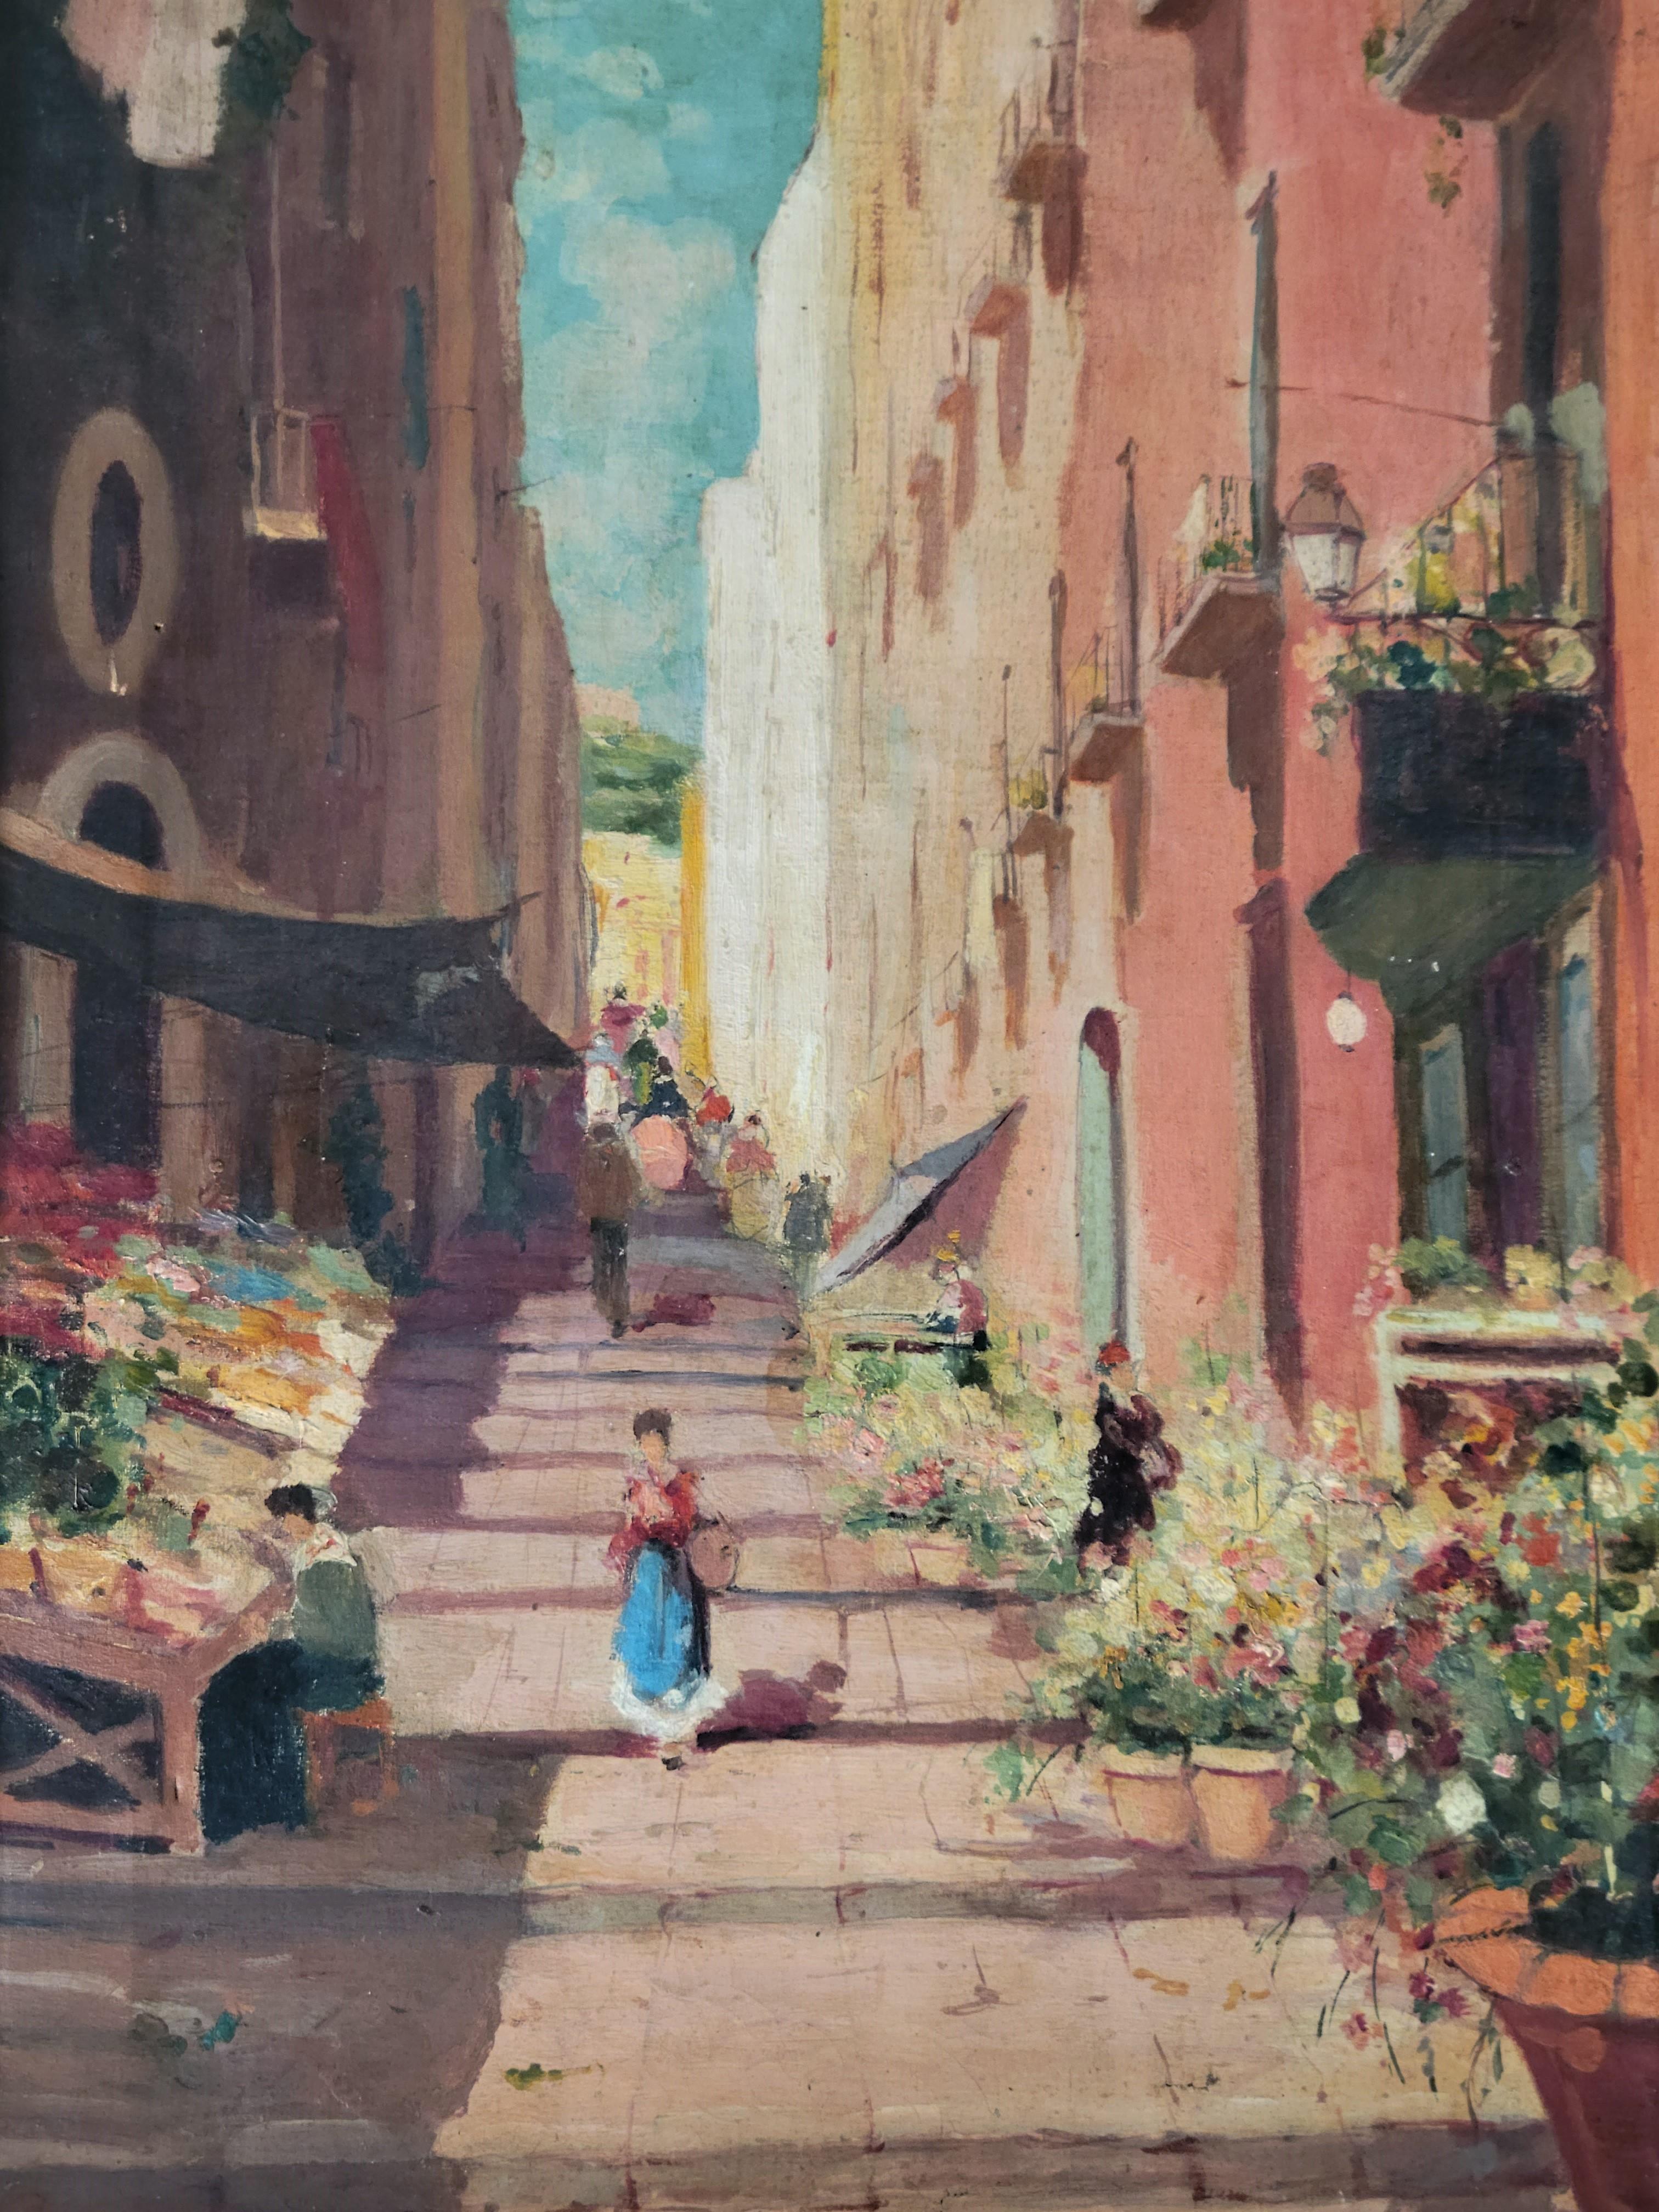 Eine erstaunliche Vintage Öl auf Leinwand Gemälde einer Straße Marktszene in Italien. Prächtige Farben (Terrakotta, Ocker, Blau, Jägergrün) und impressionistische Pinselstriche machen dieses Gemälde zu einem echten Hingucker. Neuer Rahmen aus